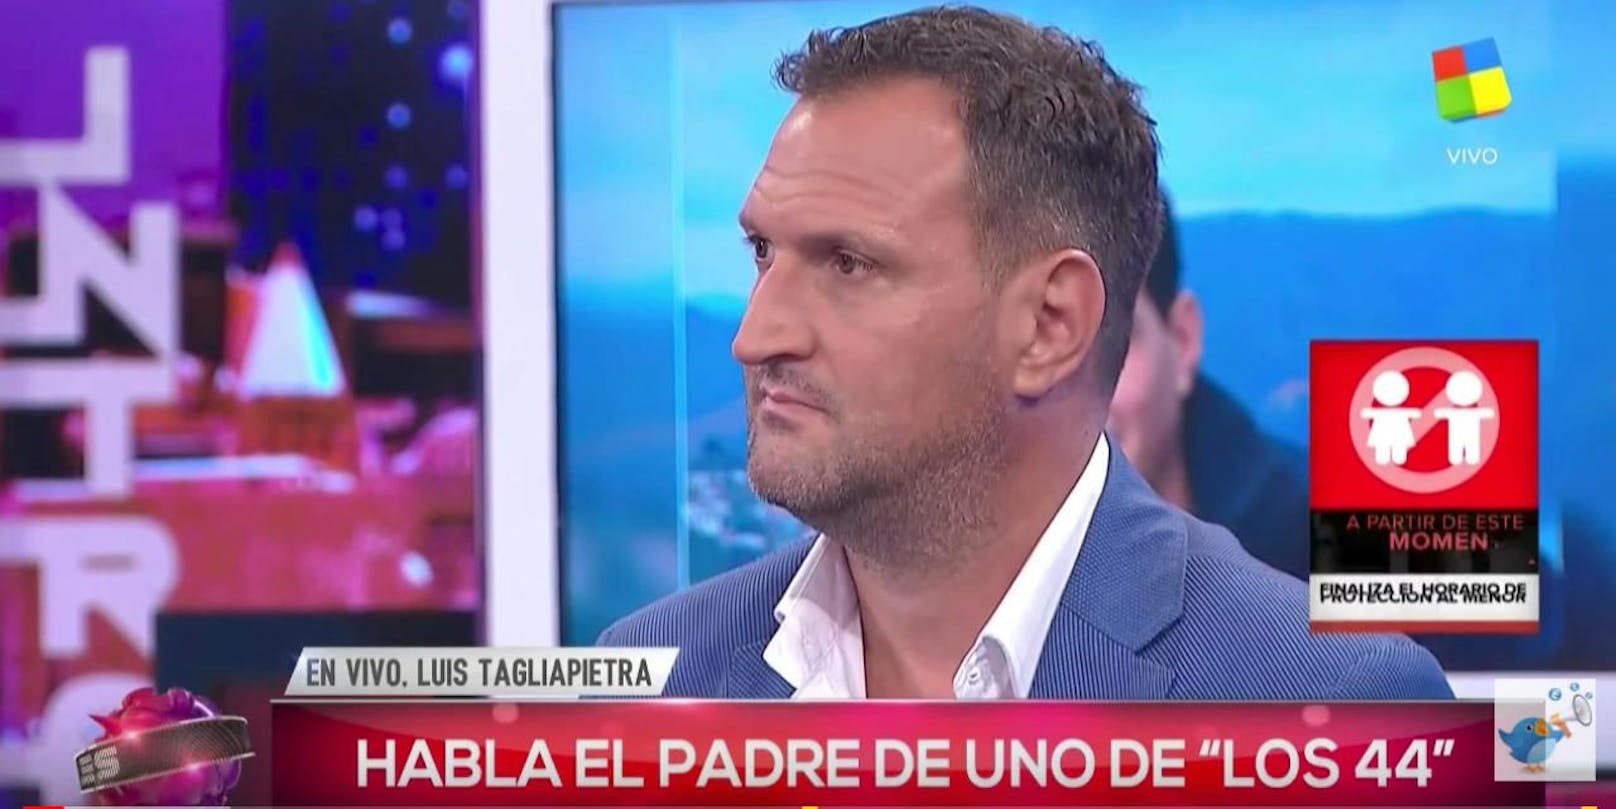 Erschüttert: Vater Luis Tagliapietra wurde von der Marine gesagt, dass sein Sohn und alle anderen Besatzungsmitglieder tot seien. Im argentinischen TV sprach er darüber. 